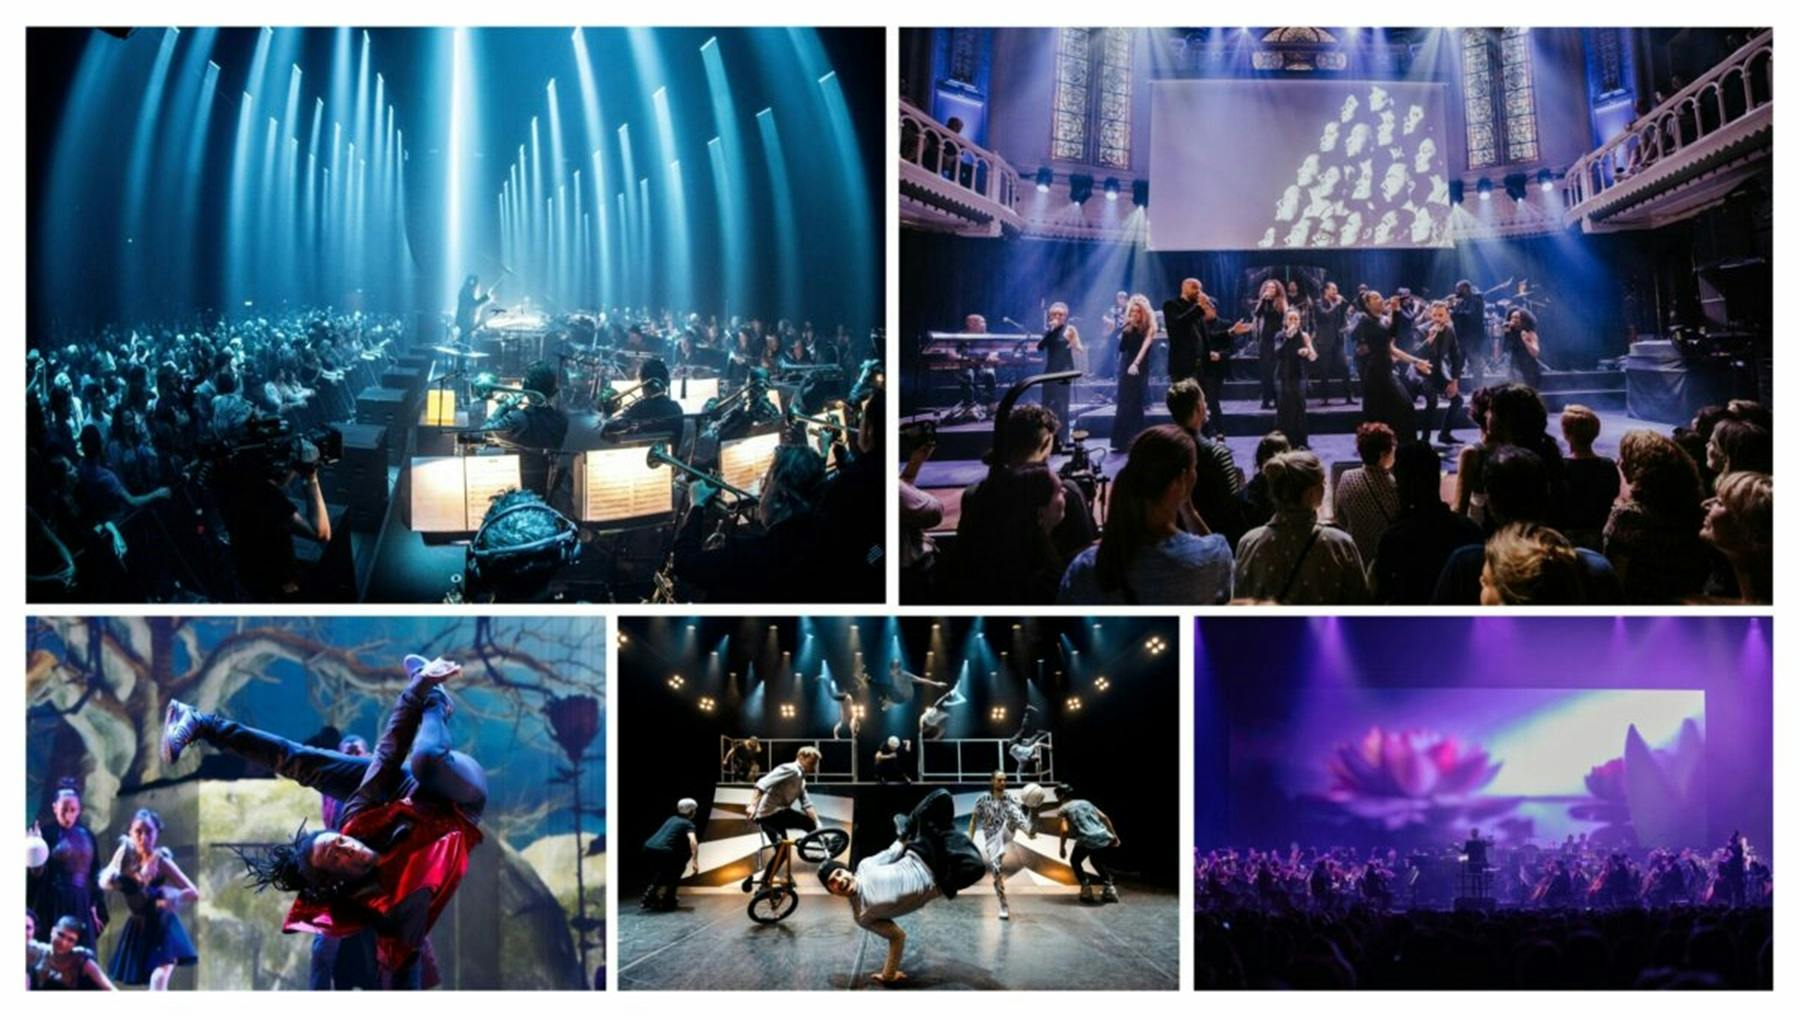 Openingsconcert Amsterdam 750 - Verliefd op onze stad